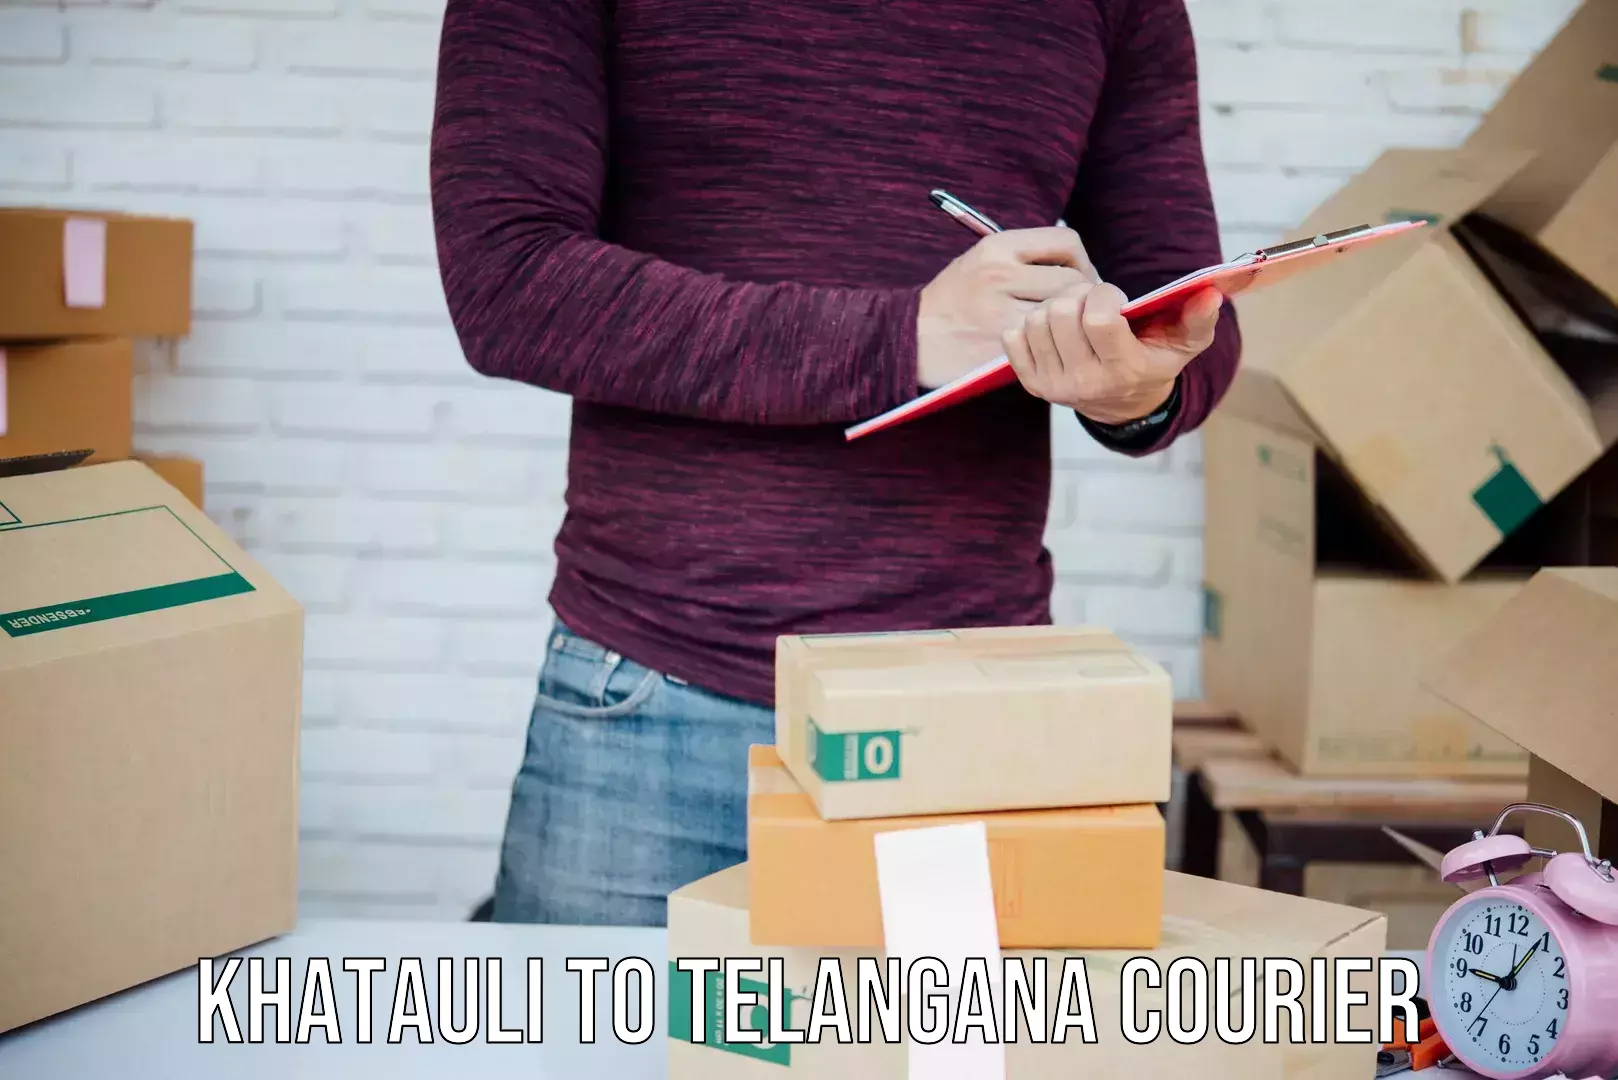 Custom courier packaging Khatauli to Sikanderguda